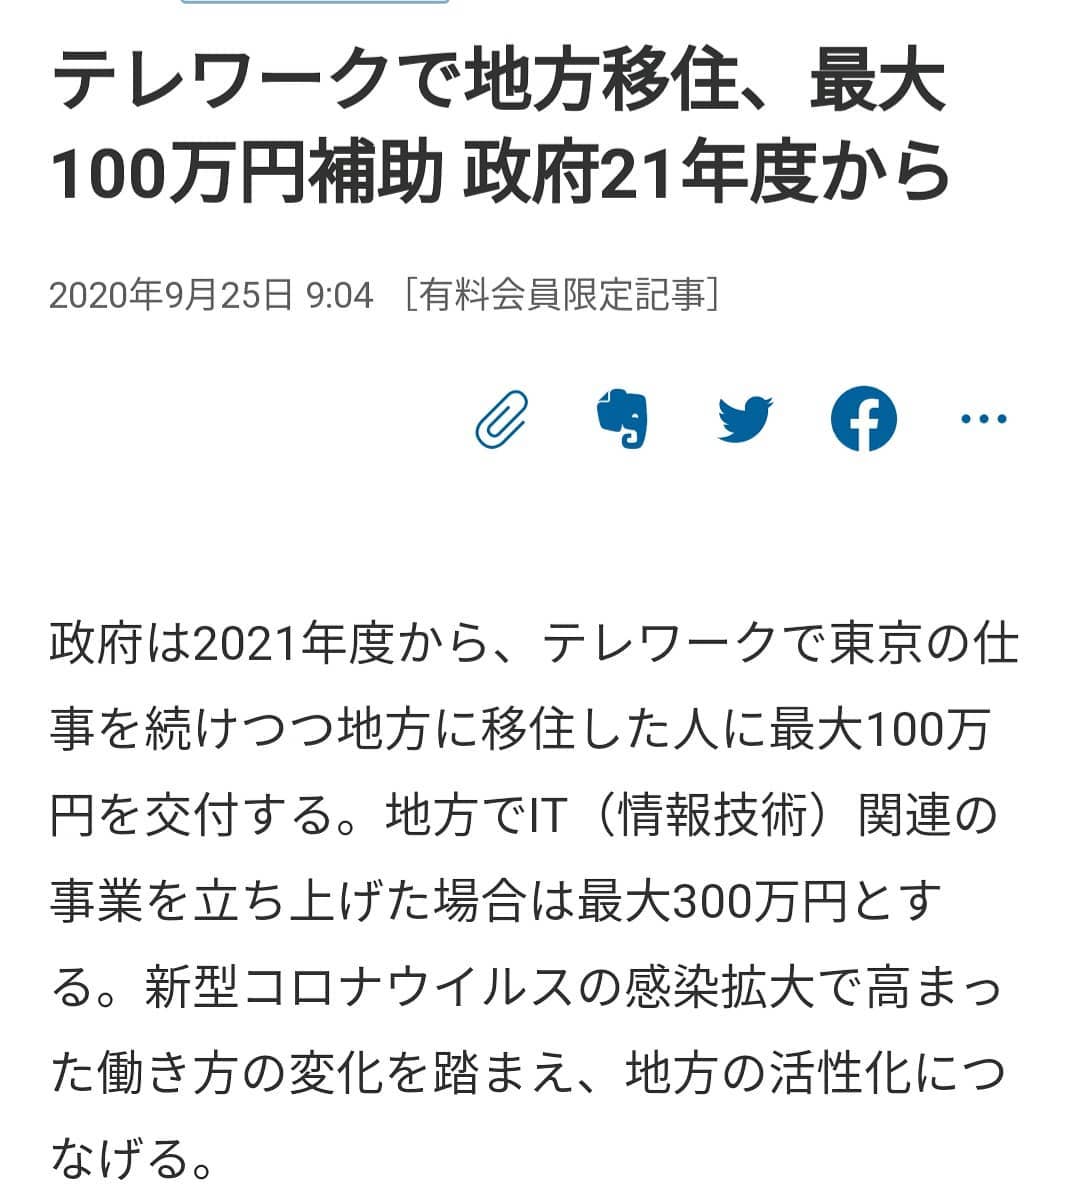 【移住100万円!】東京の仕事を続けつつ地方に移住した人に100万円を交付する（日経新聞）ぜひ、桑折町も選択肢の一つに！移住者に優しい町ですよ。